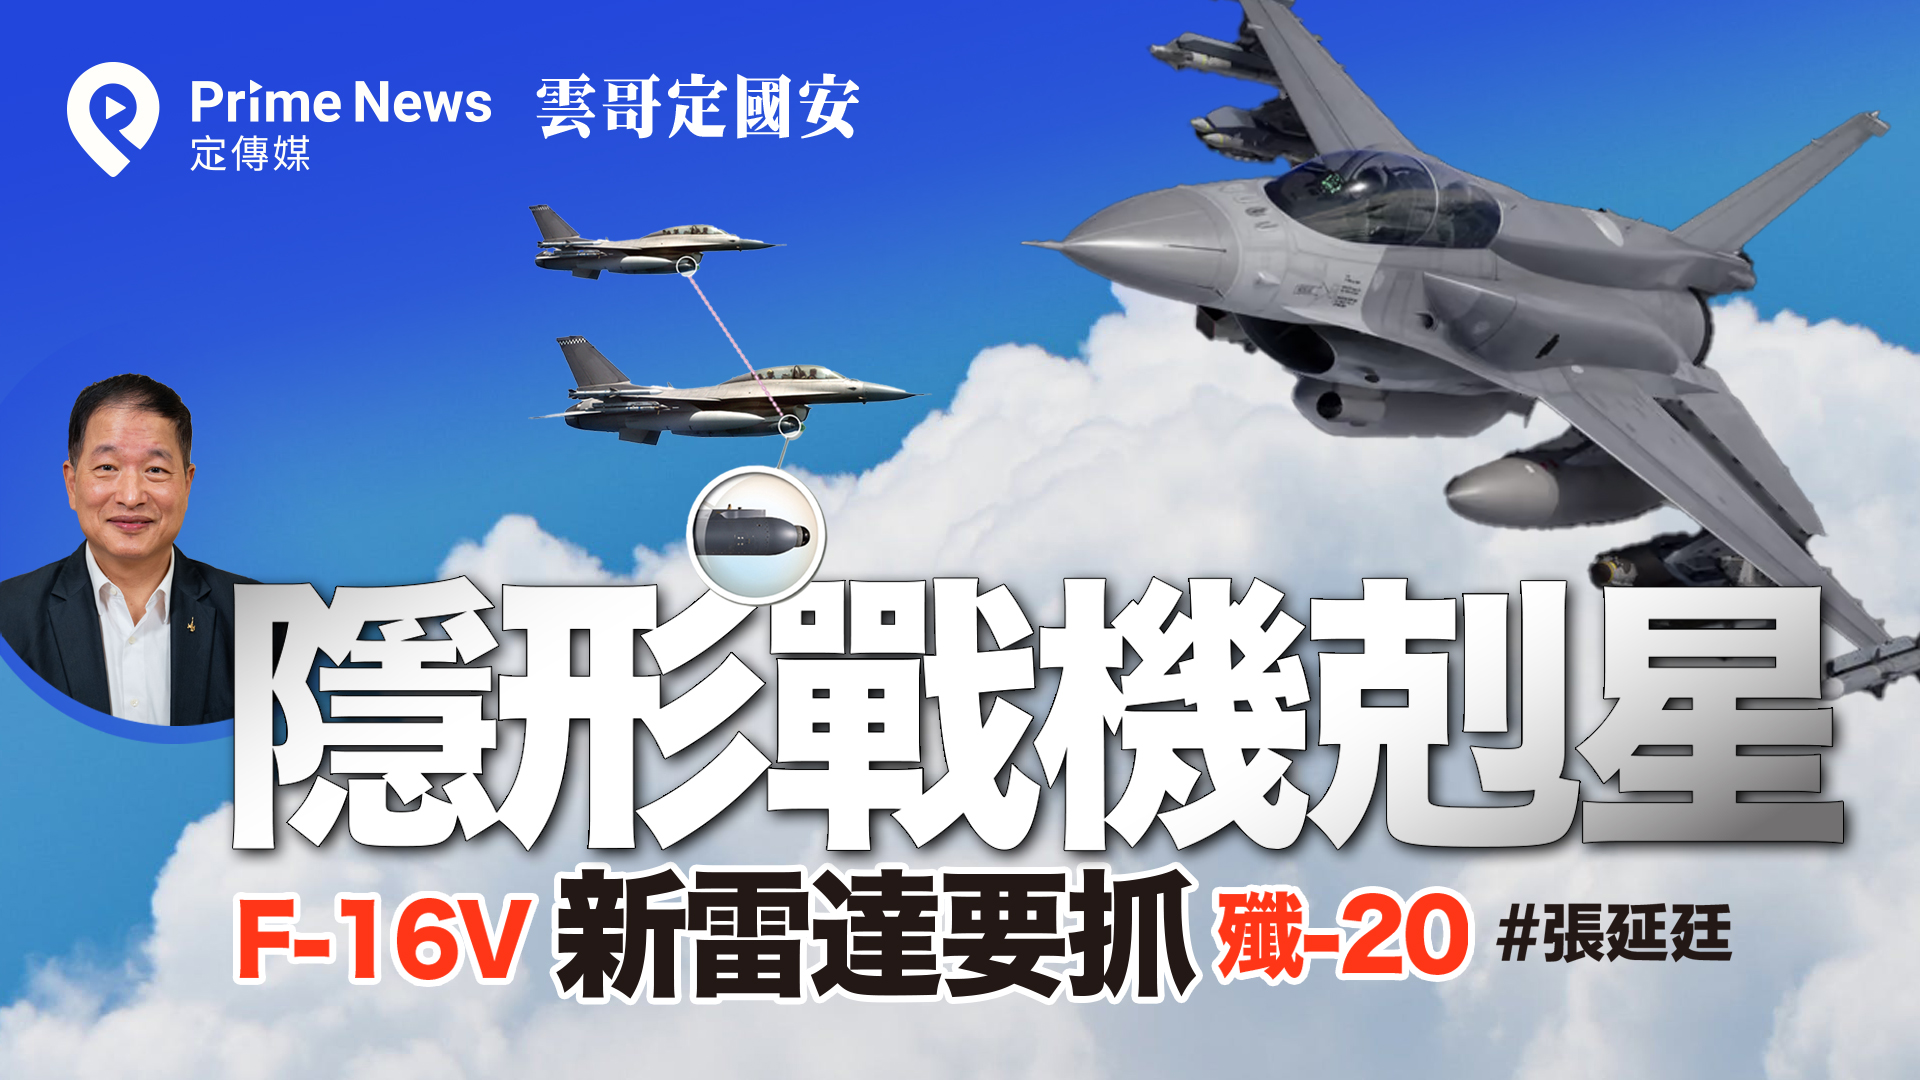 抓殲神器」 F-16V新雷達成殲-20剋星